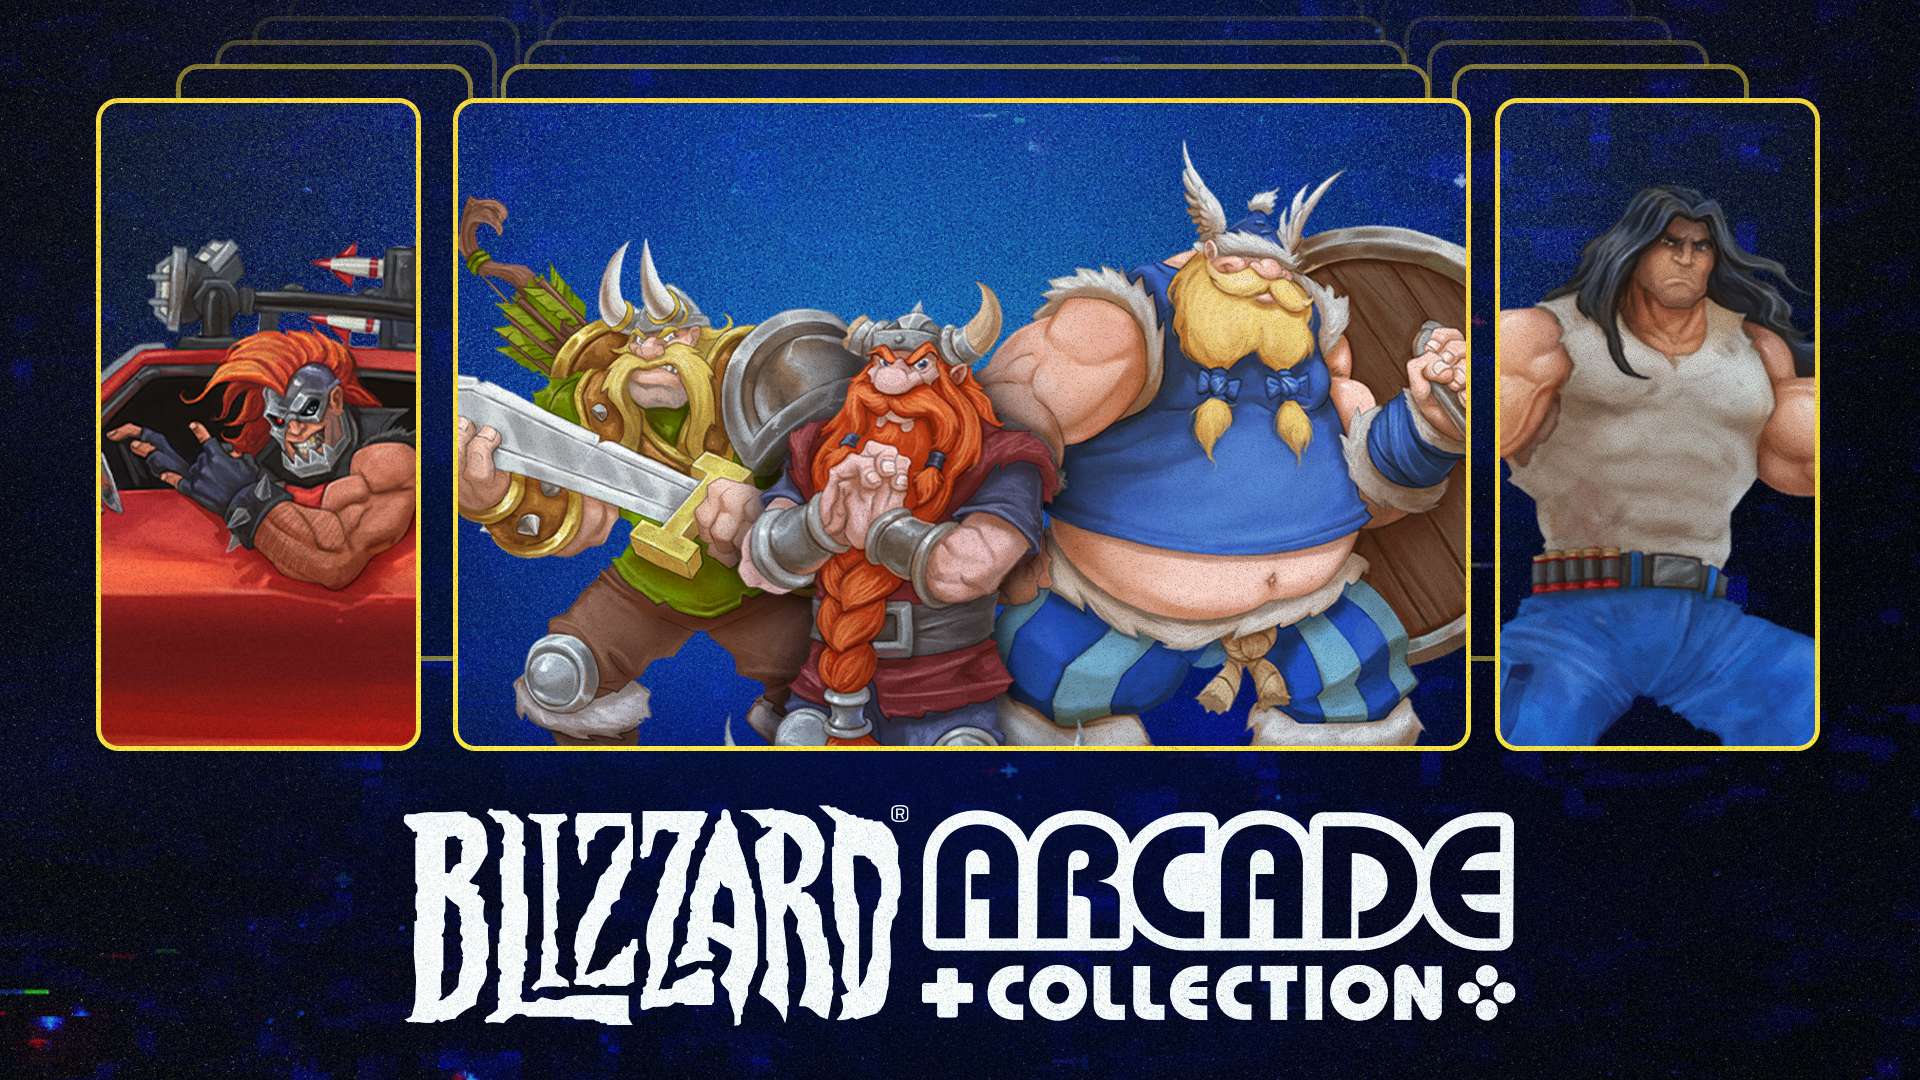 Blizzard® Arcade Collection пополнили две новые игры и ряд нововведений